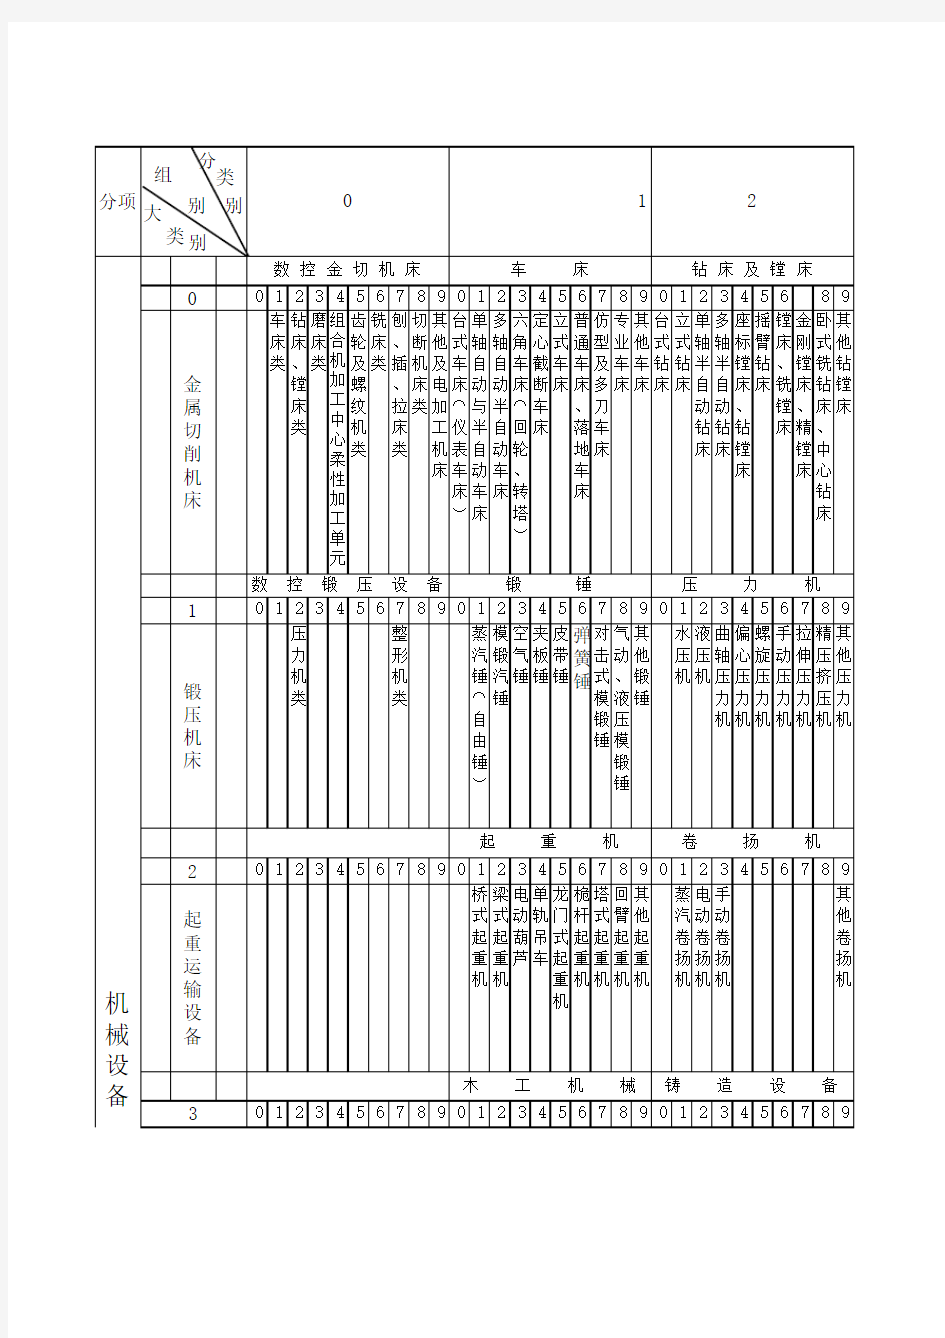 设备统一分类及编号目录(在1965年《目录》的基础上修改补充)   1988年6月